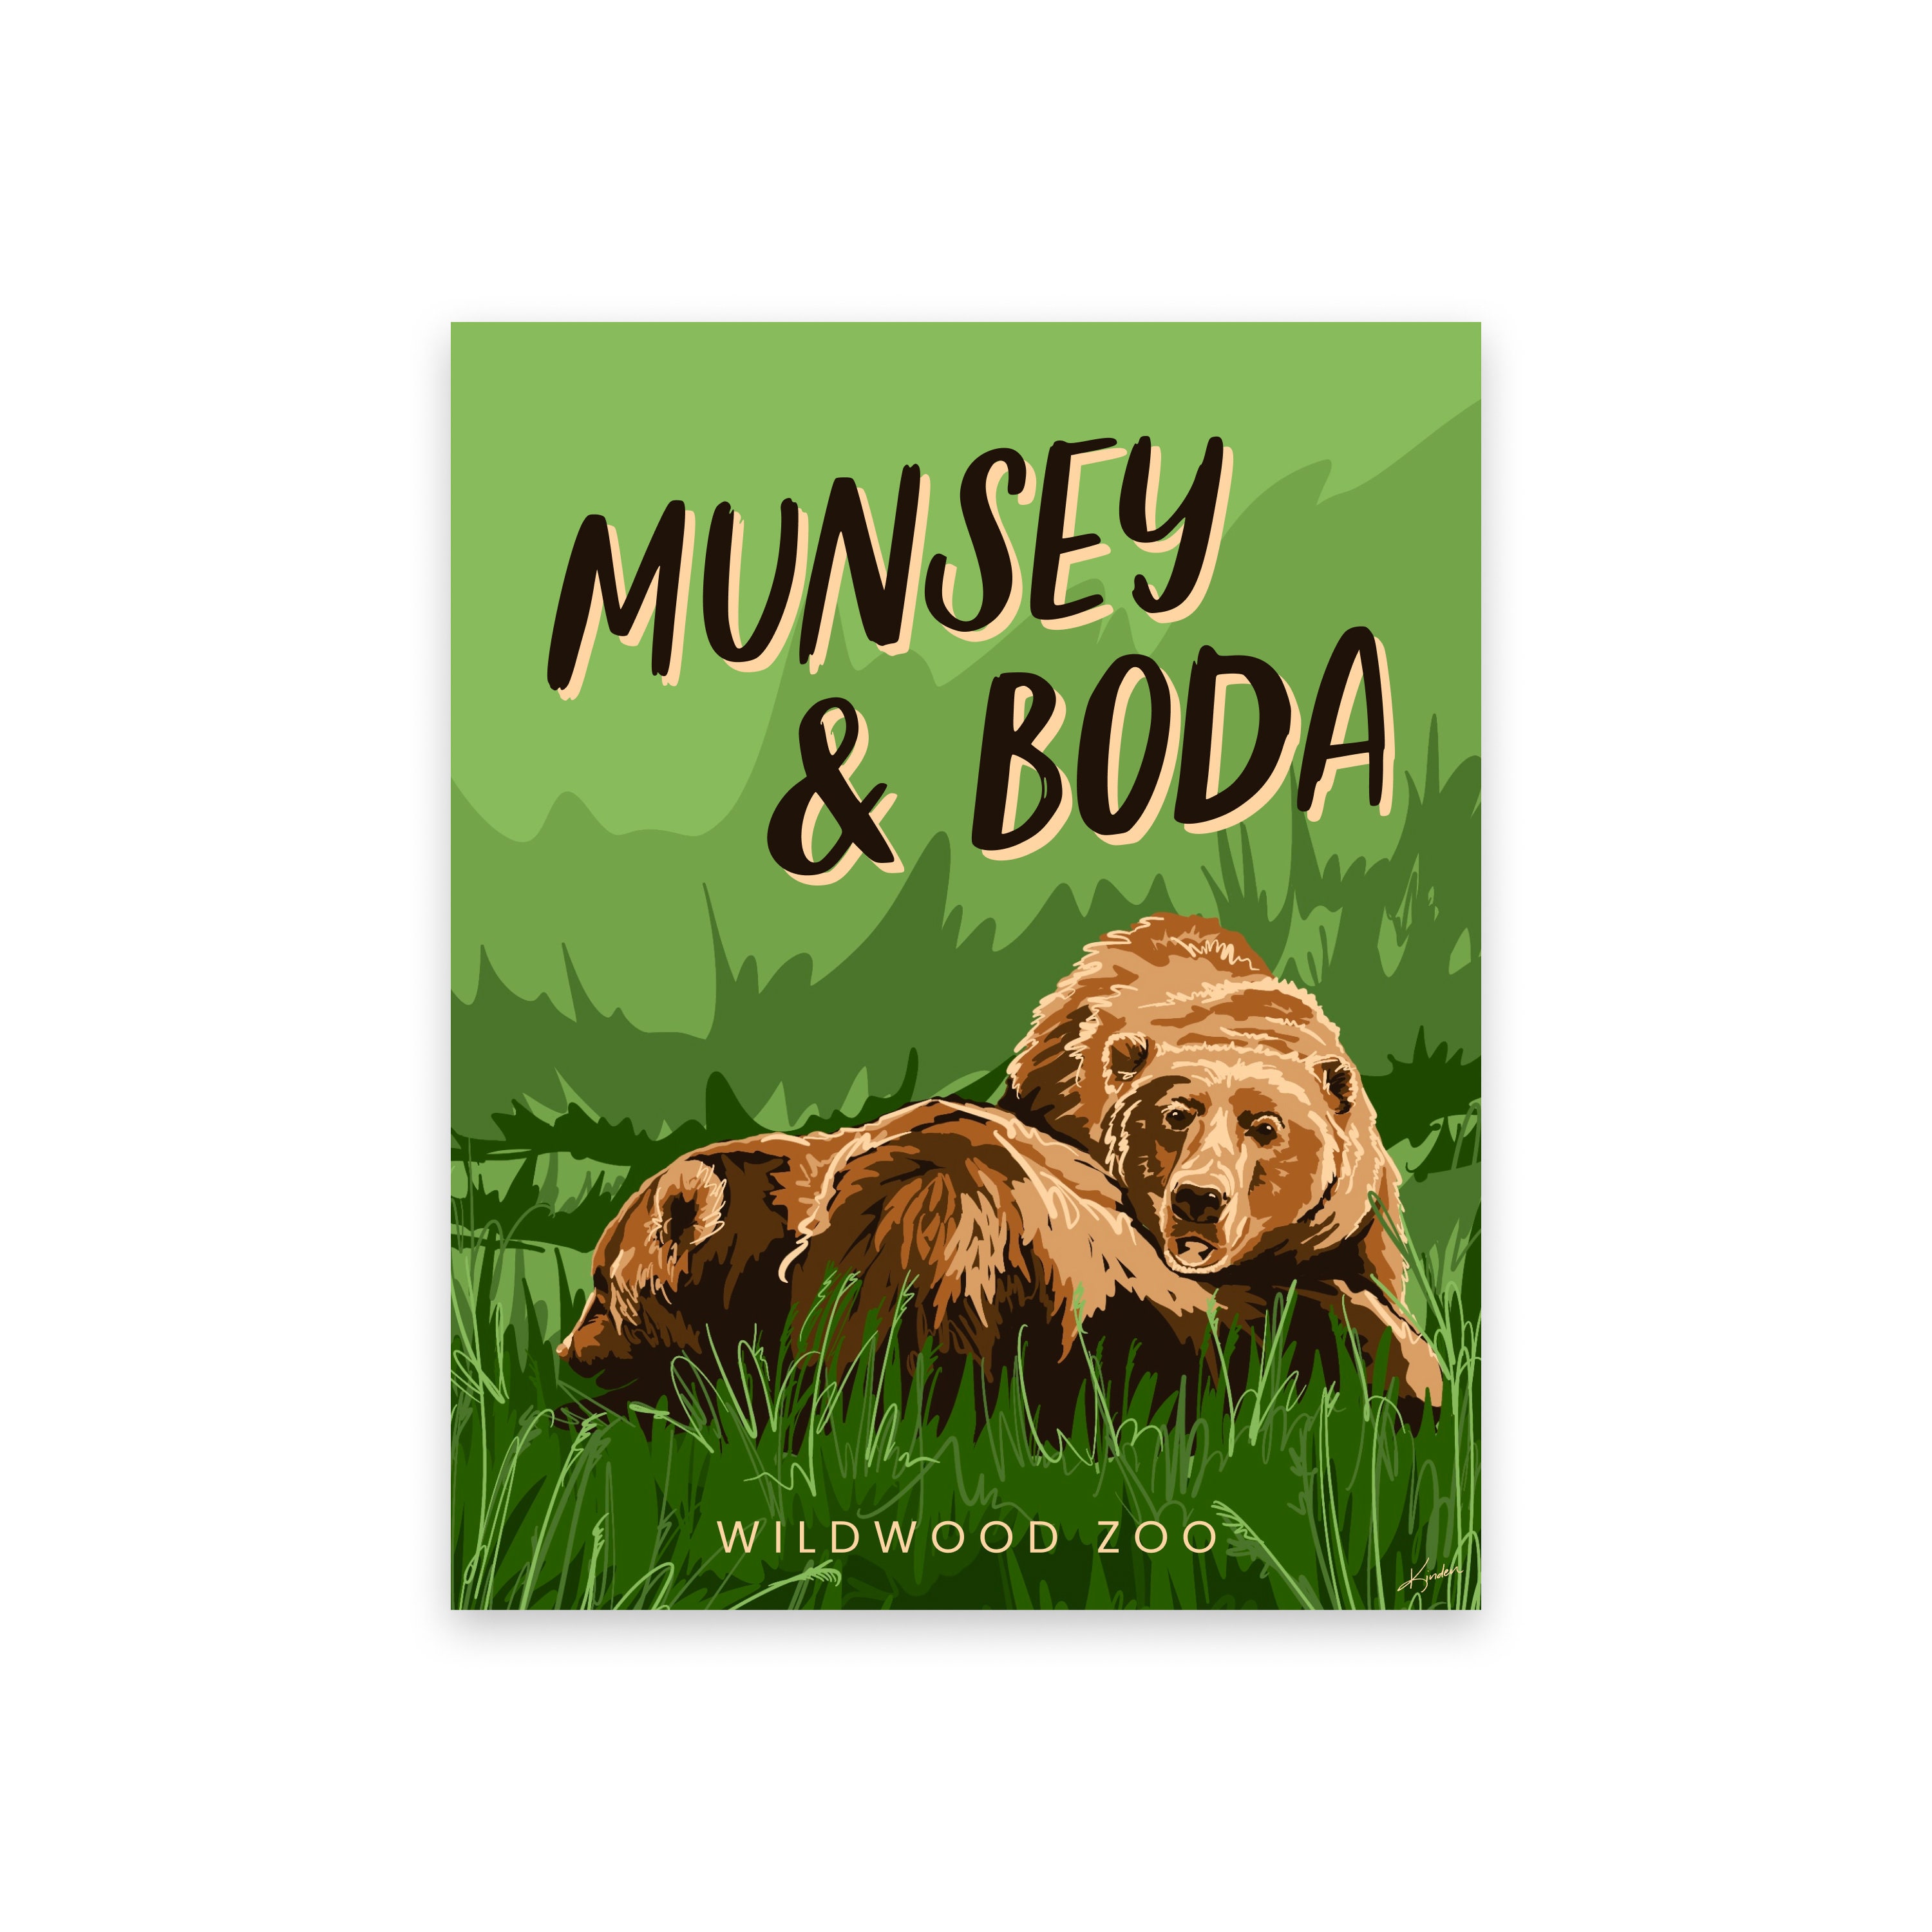 Munsey and Boda Wildwood Zoo Bears Marshfield Wisconsin Nature photo